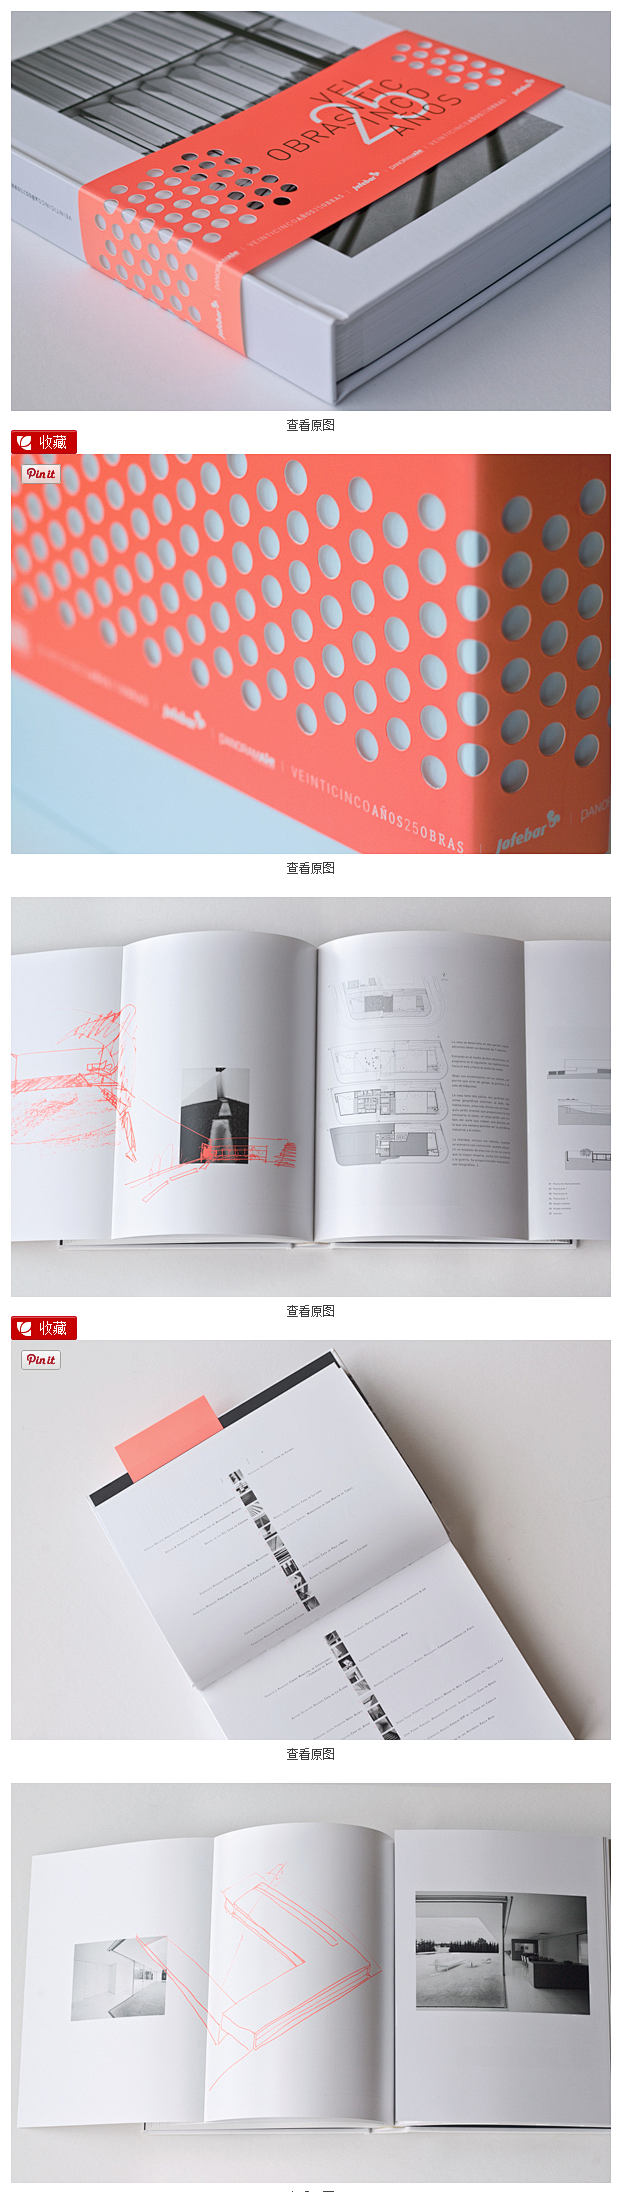 精美书籍装帧设计 - 书籍装帧 - 设计...